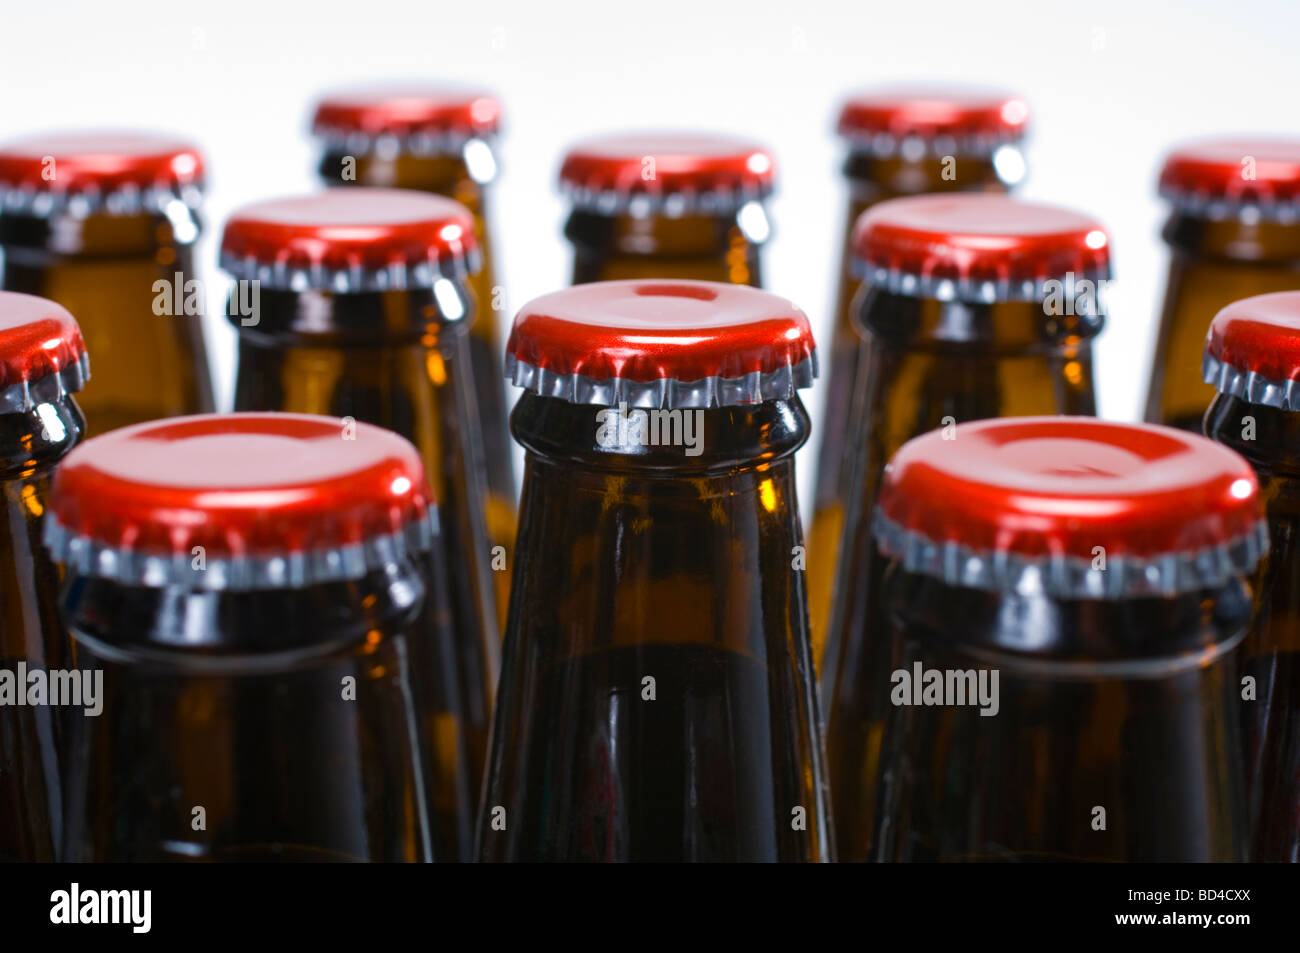 Le bottiglie di birra con cappucci rossi - fatta in casa birra imbottigliata e pronti per il consumo Foto Stock